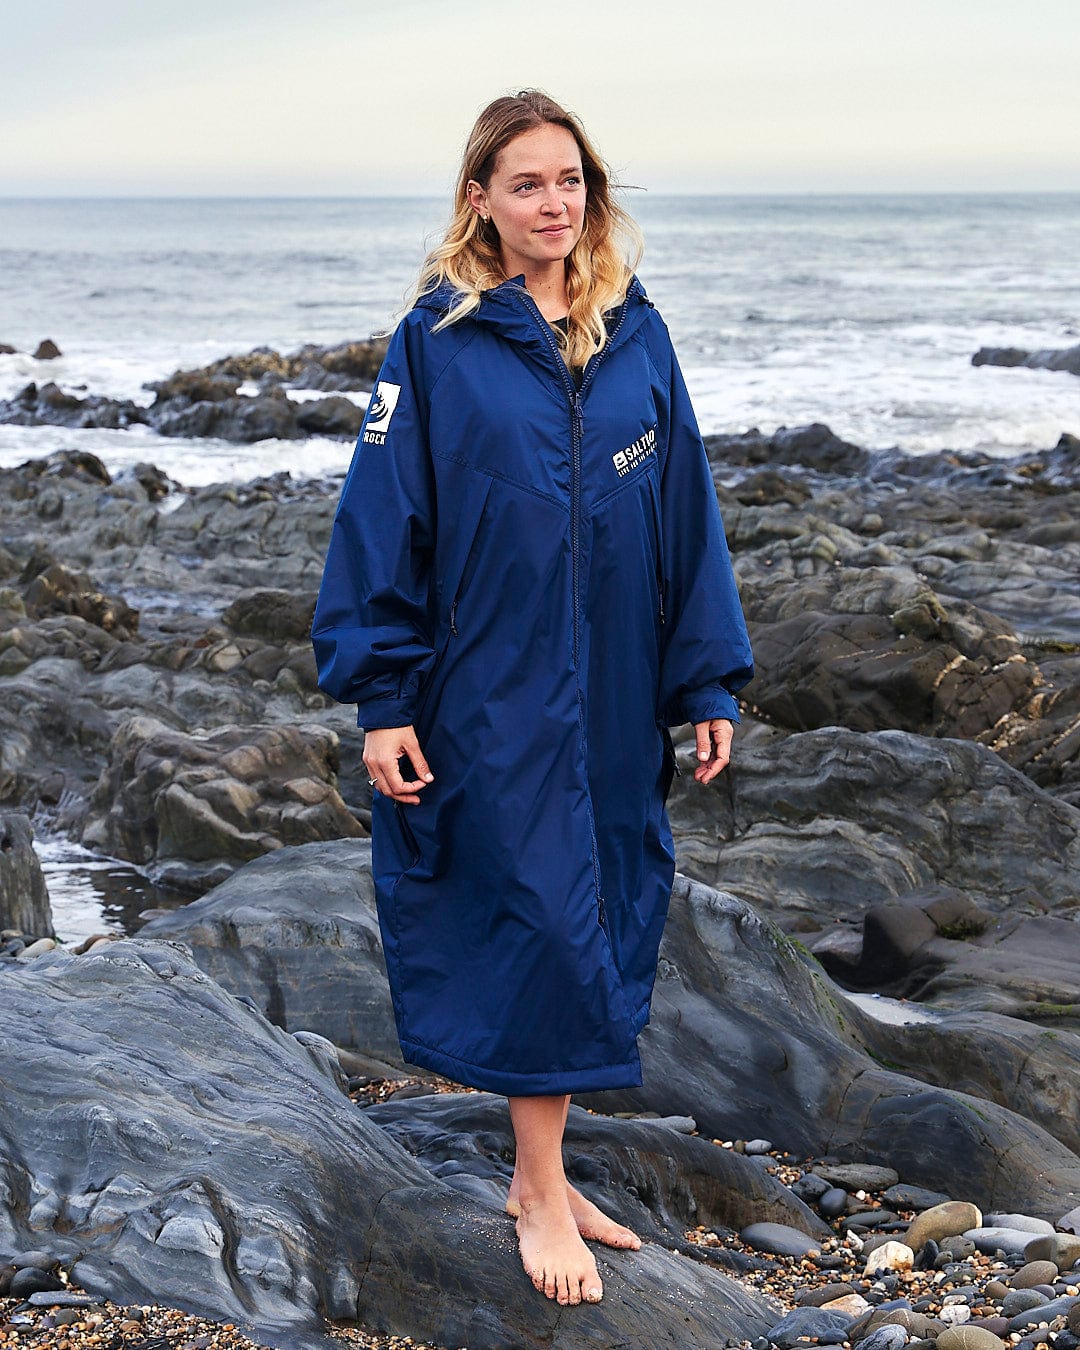 A woman in a Saltrock blue raincoat standing on rocks near the ocean.